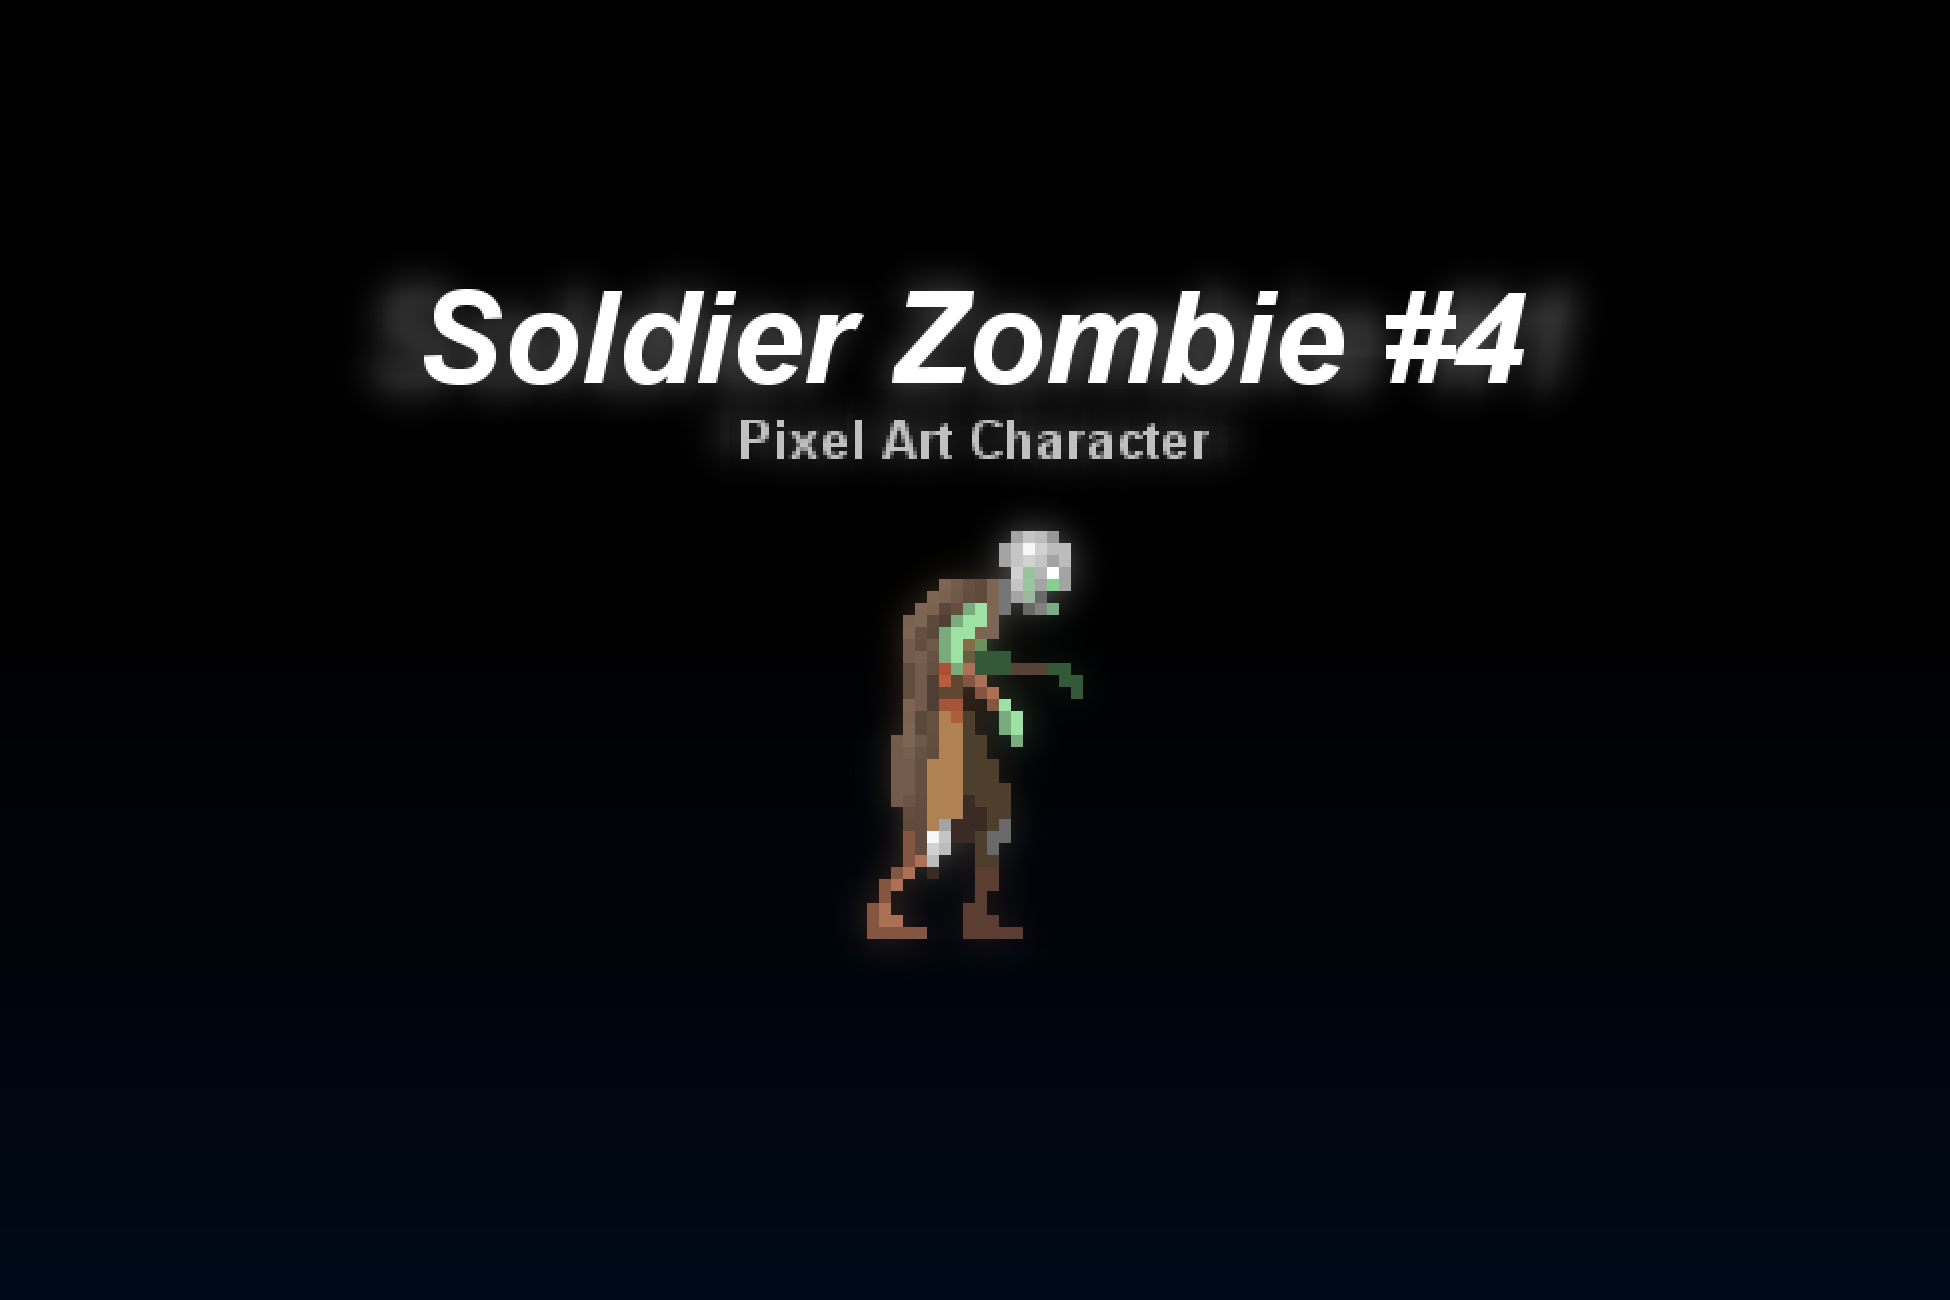 Soldier Zombie #4 - Pixel Art Character